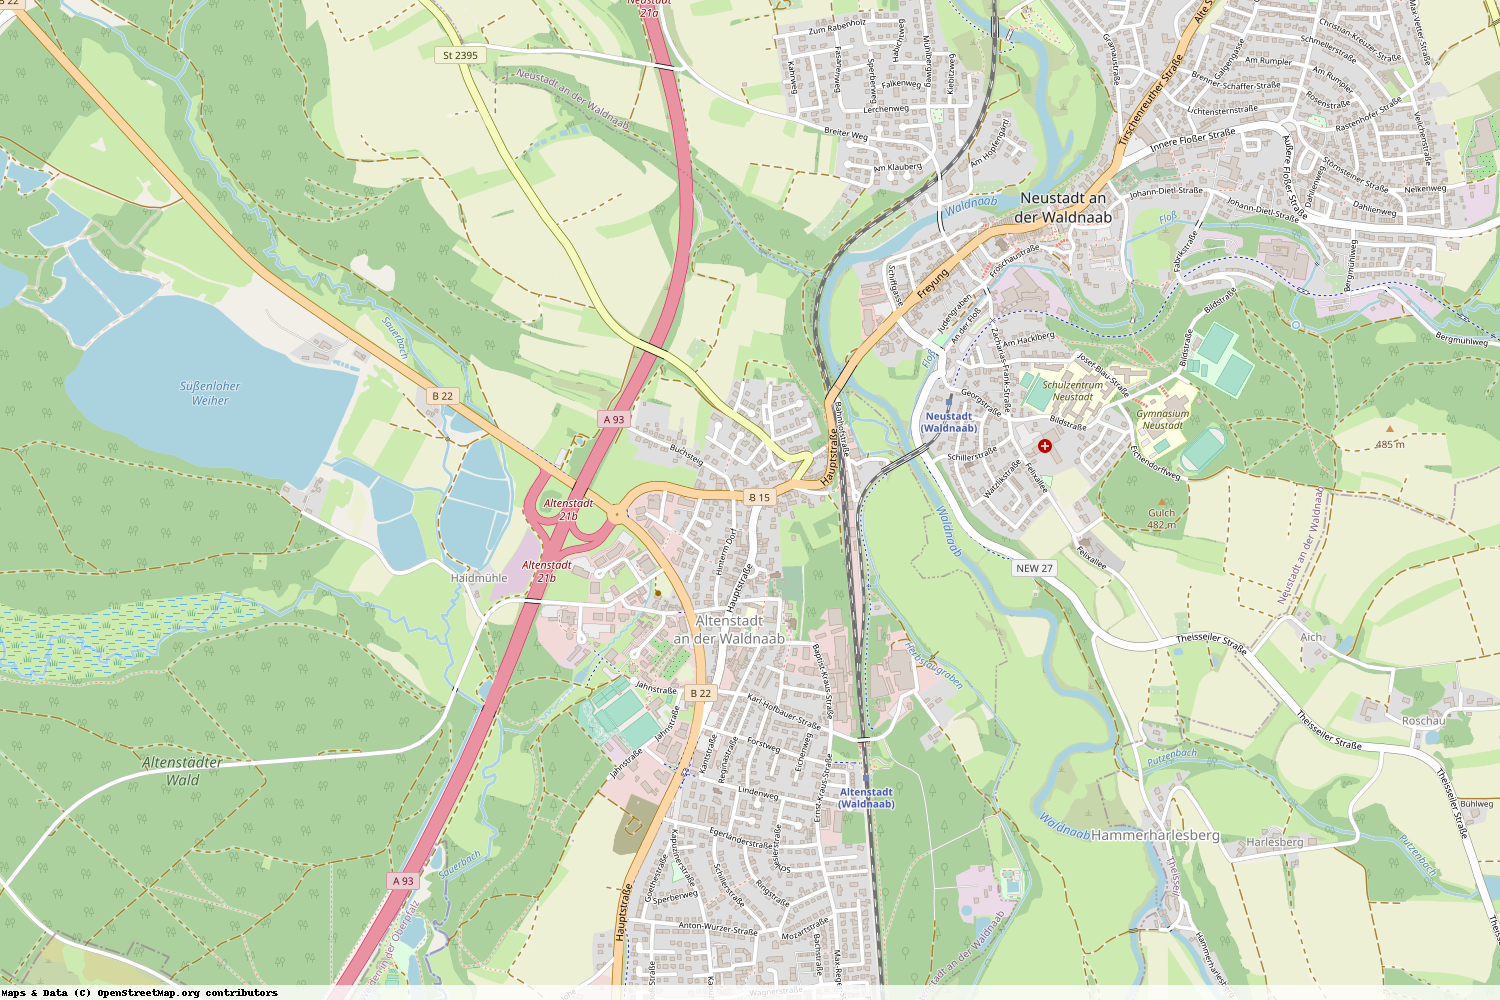 Ist gerade Stromausfall in Bayern - Neustadt a.d. Waldnaab - Altenstadt a.d. Waldnaab?